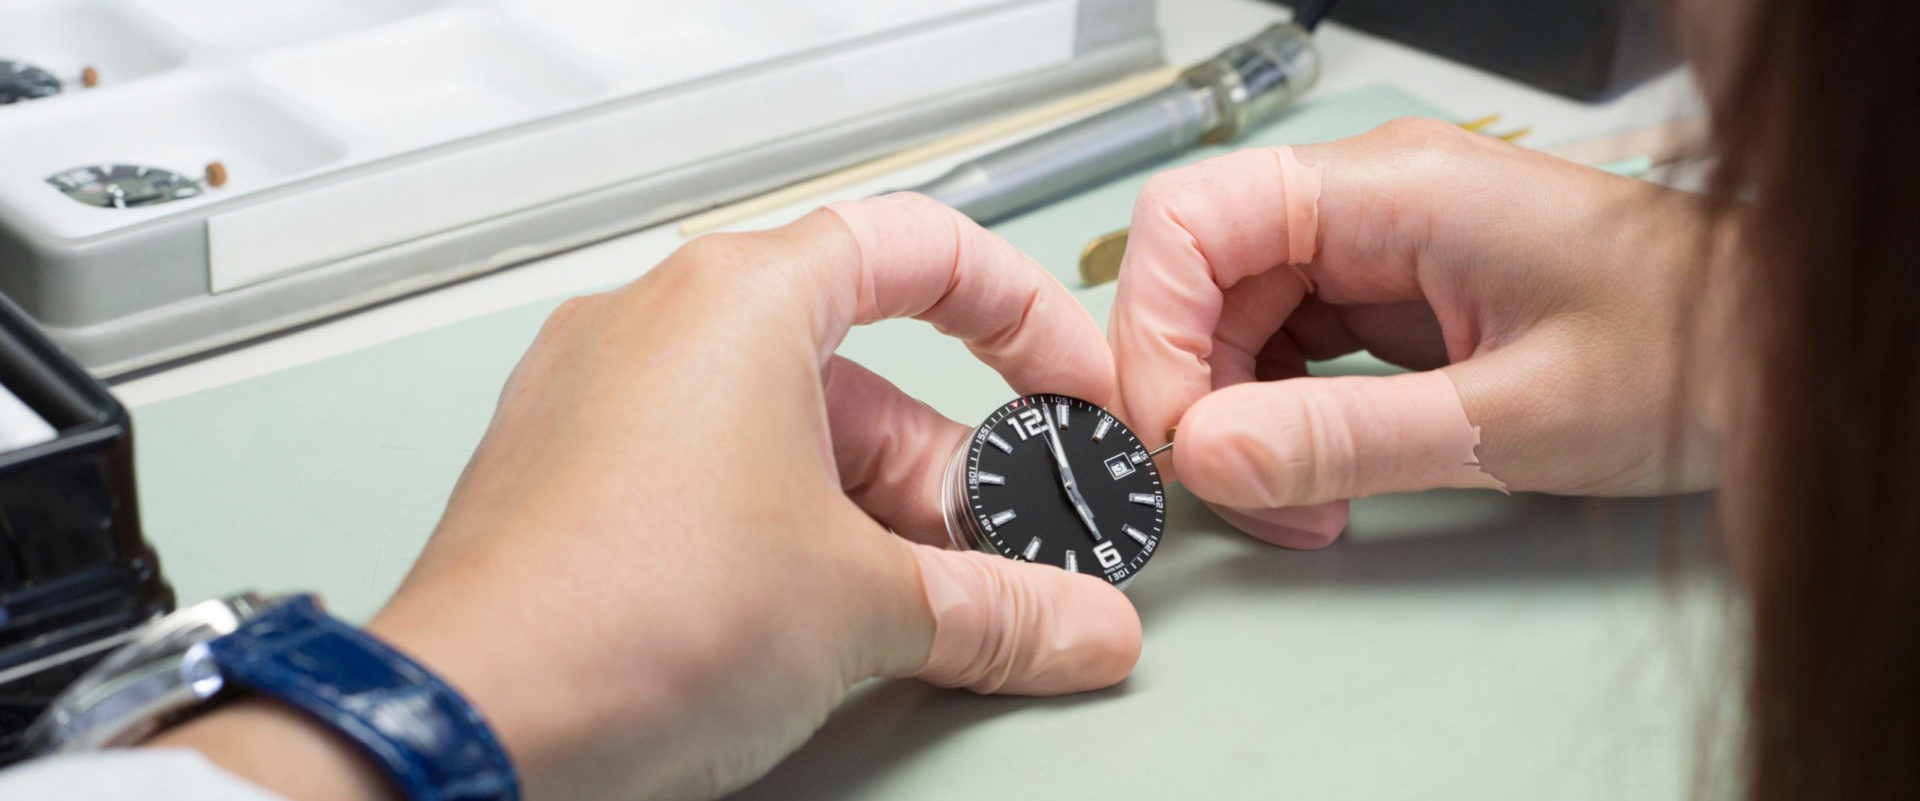 Uhrmacher repariert eine Mode Uhr